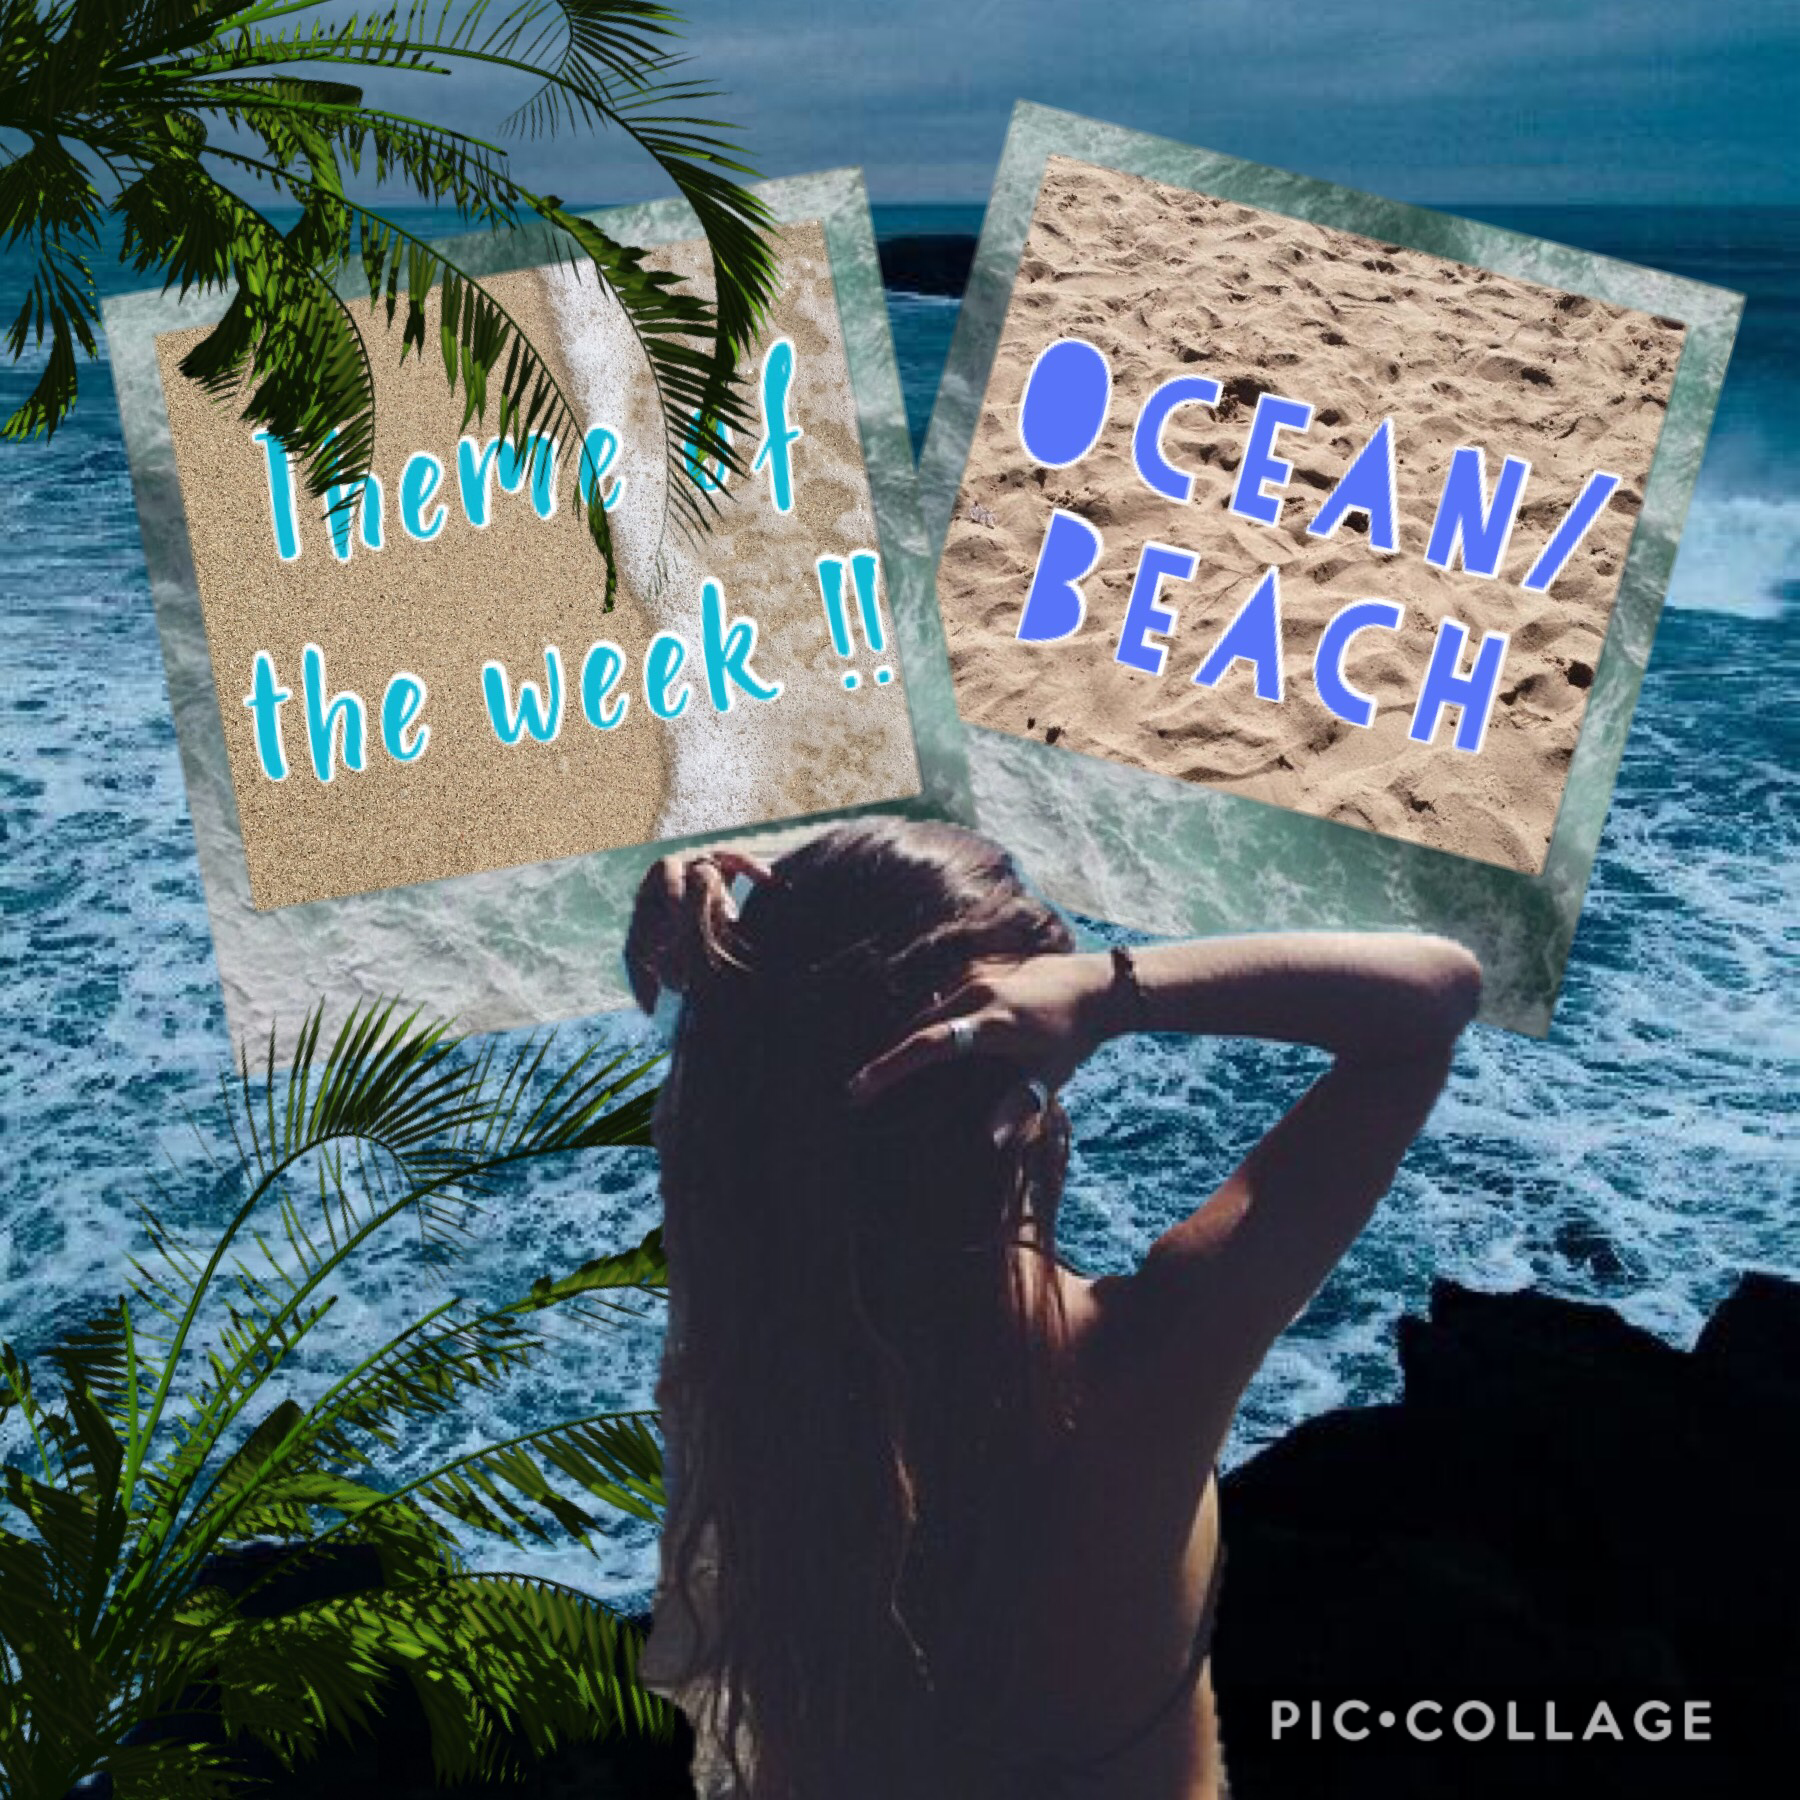 Theme will be Ocean/ Beach!